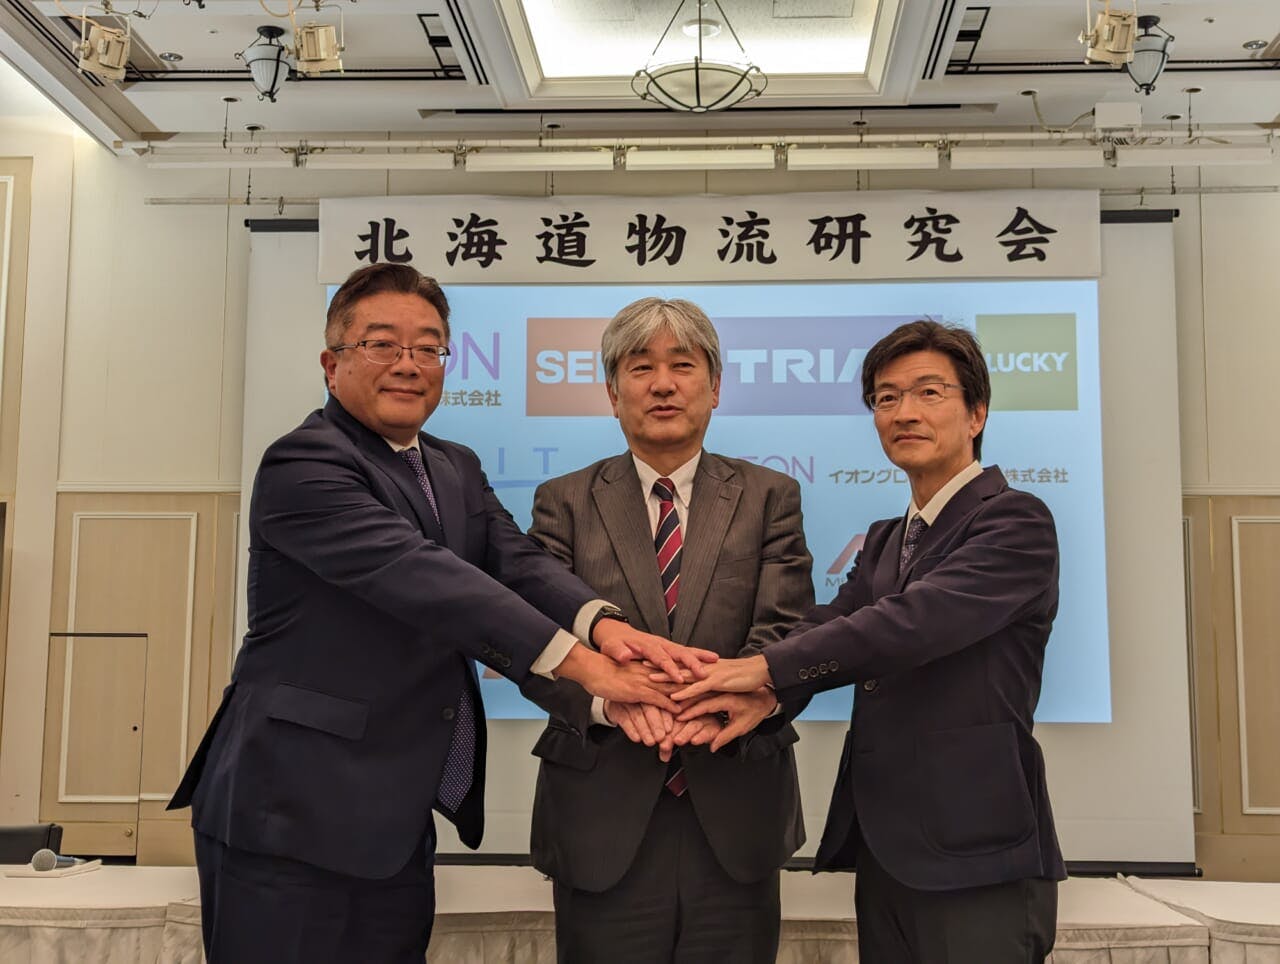 5月18日、「北海道物流研究会」が発足した